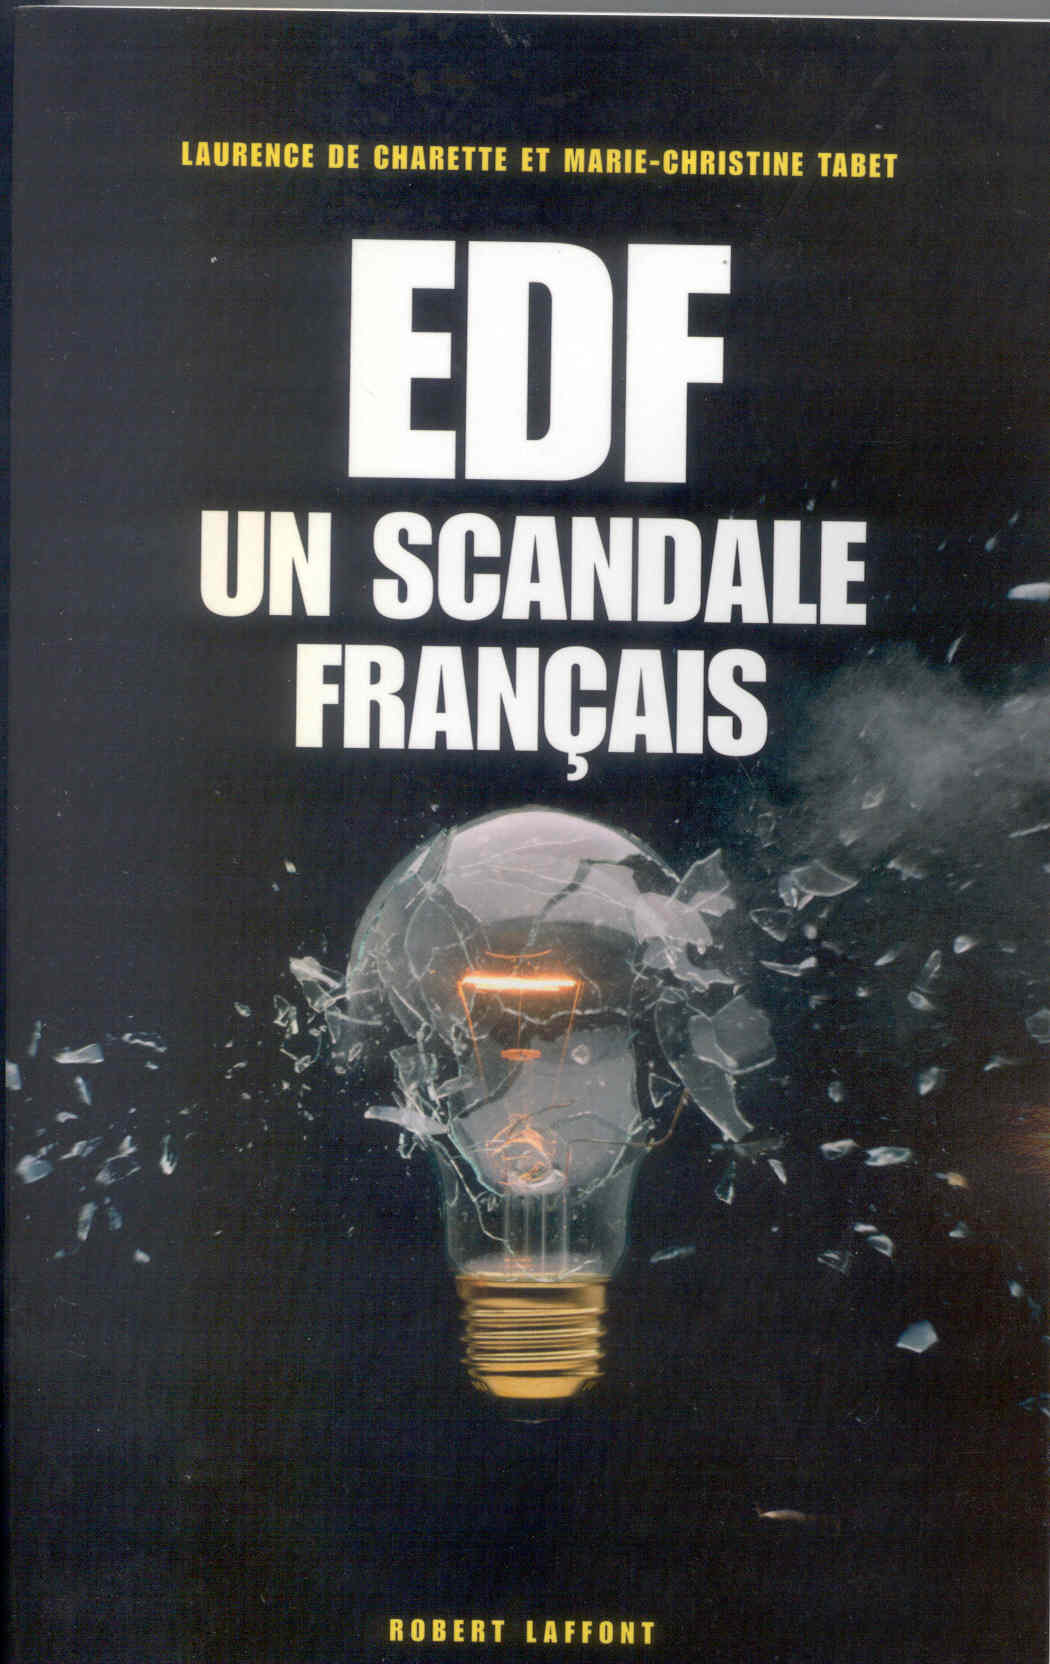 EDF UN SCANDALE FRANCAIS